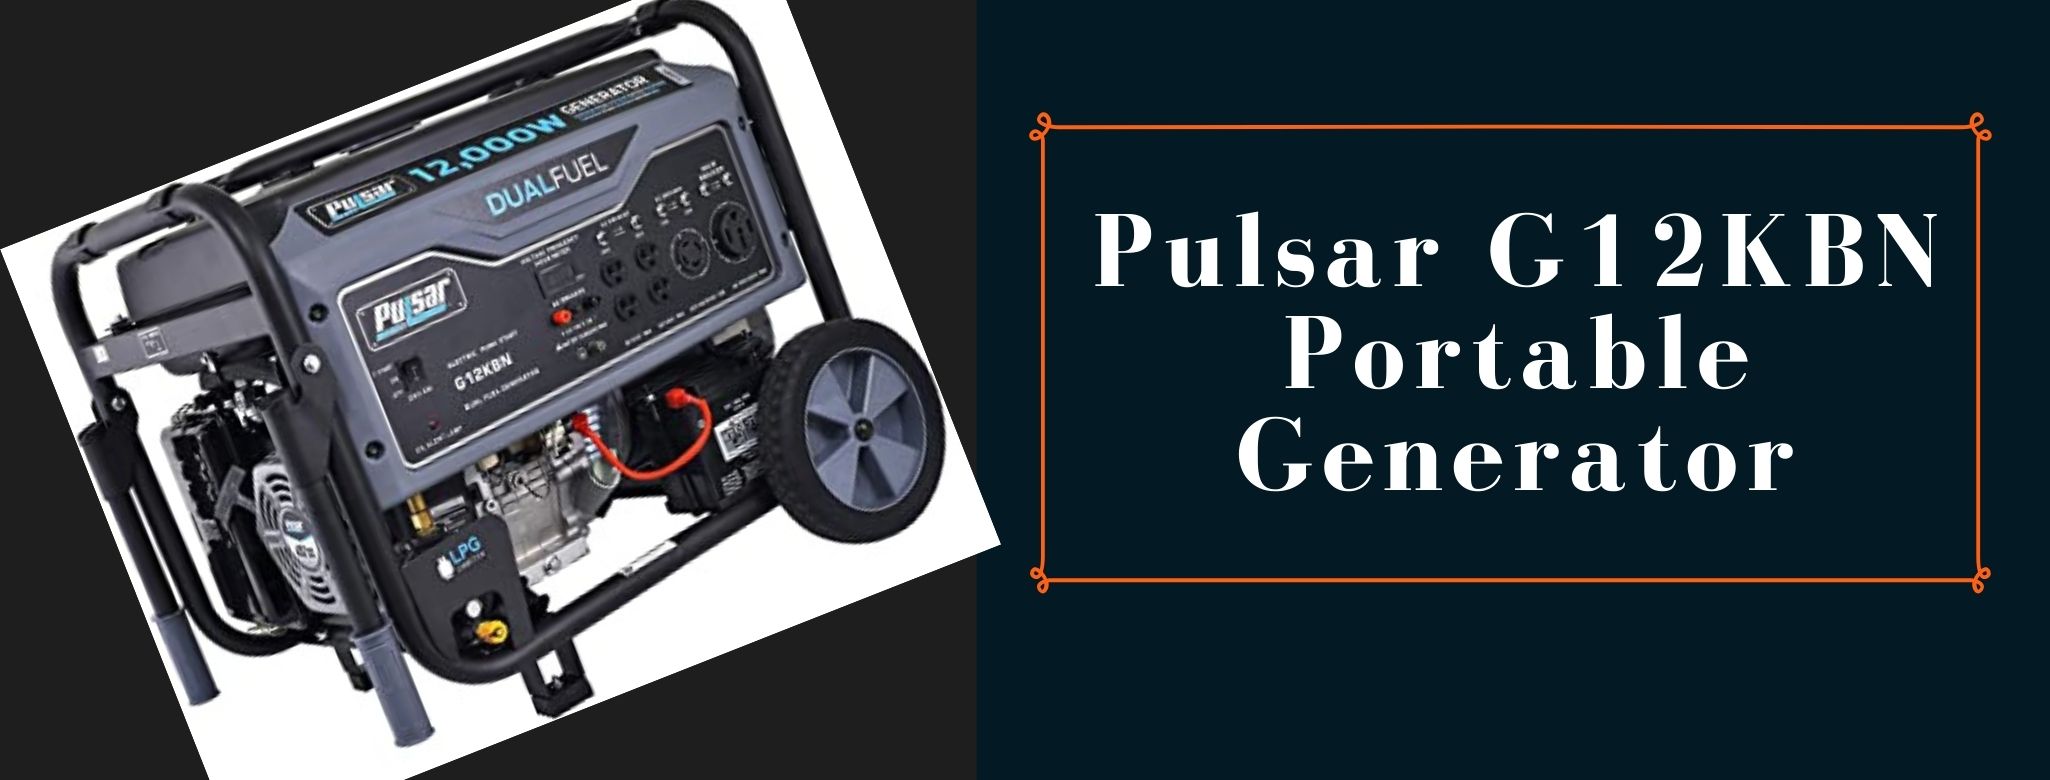 Pulsar portable generator